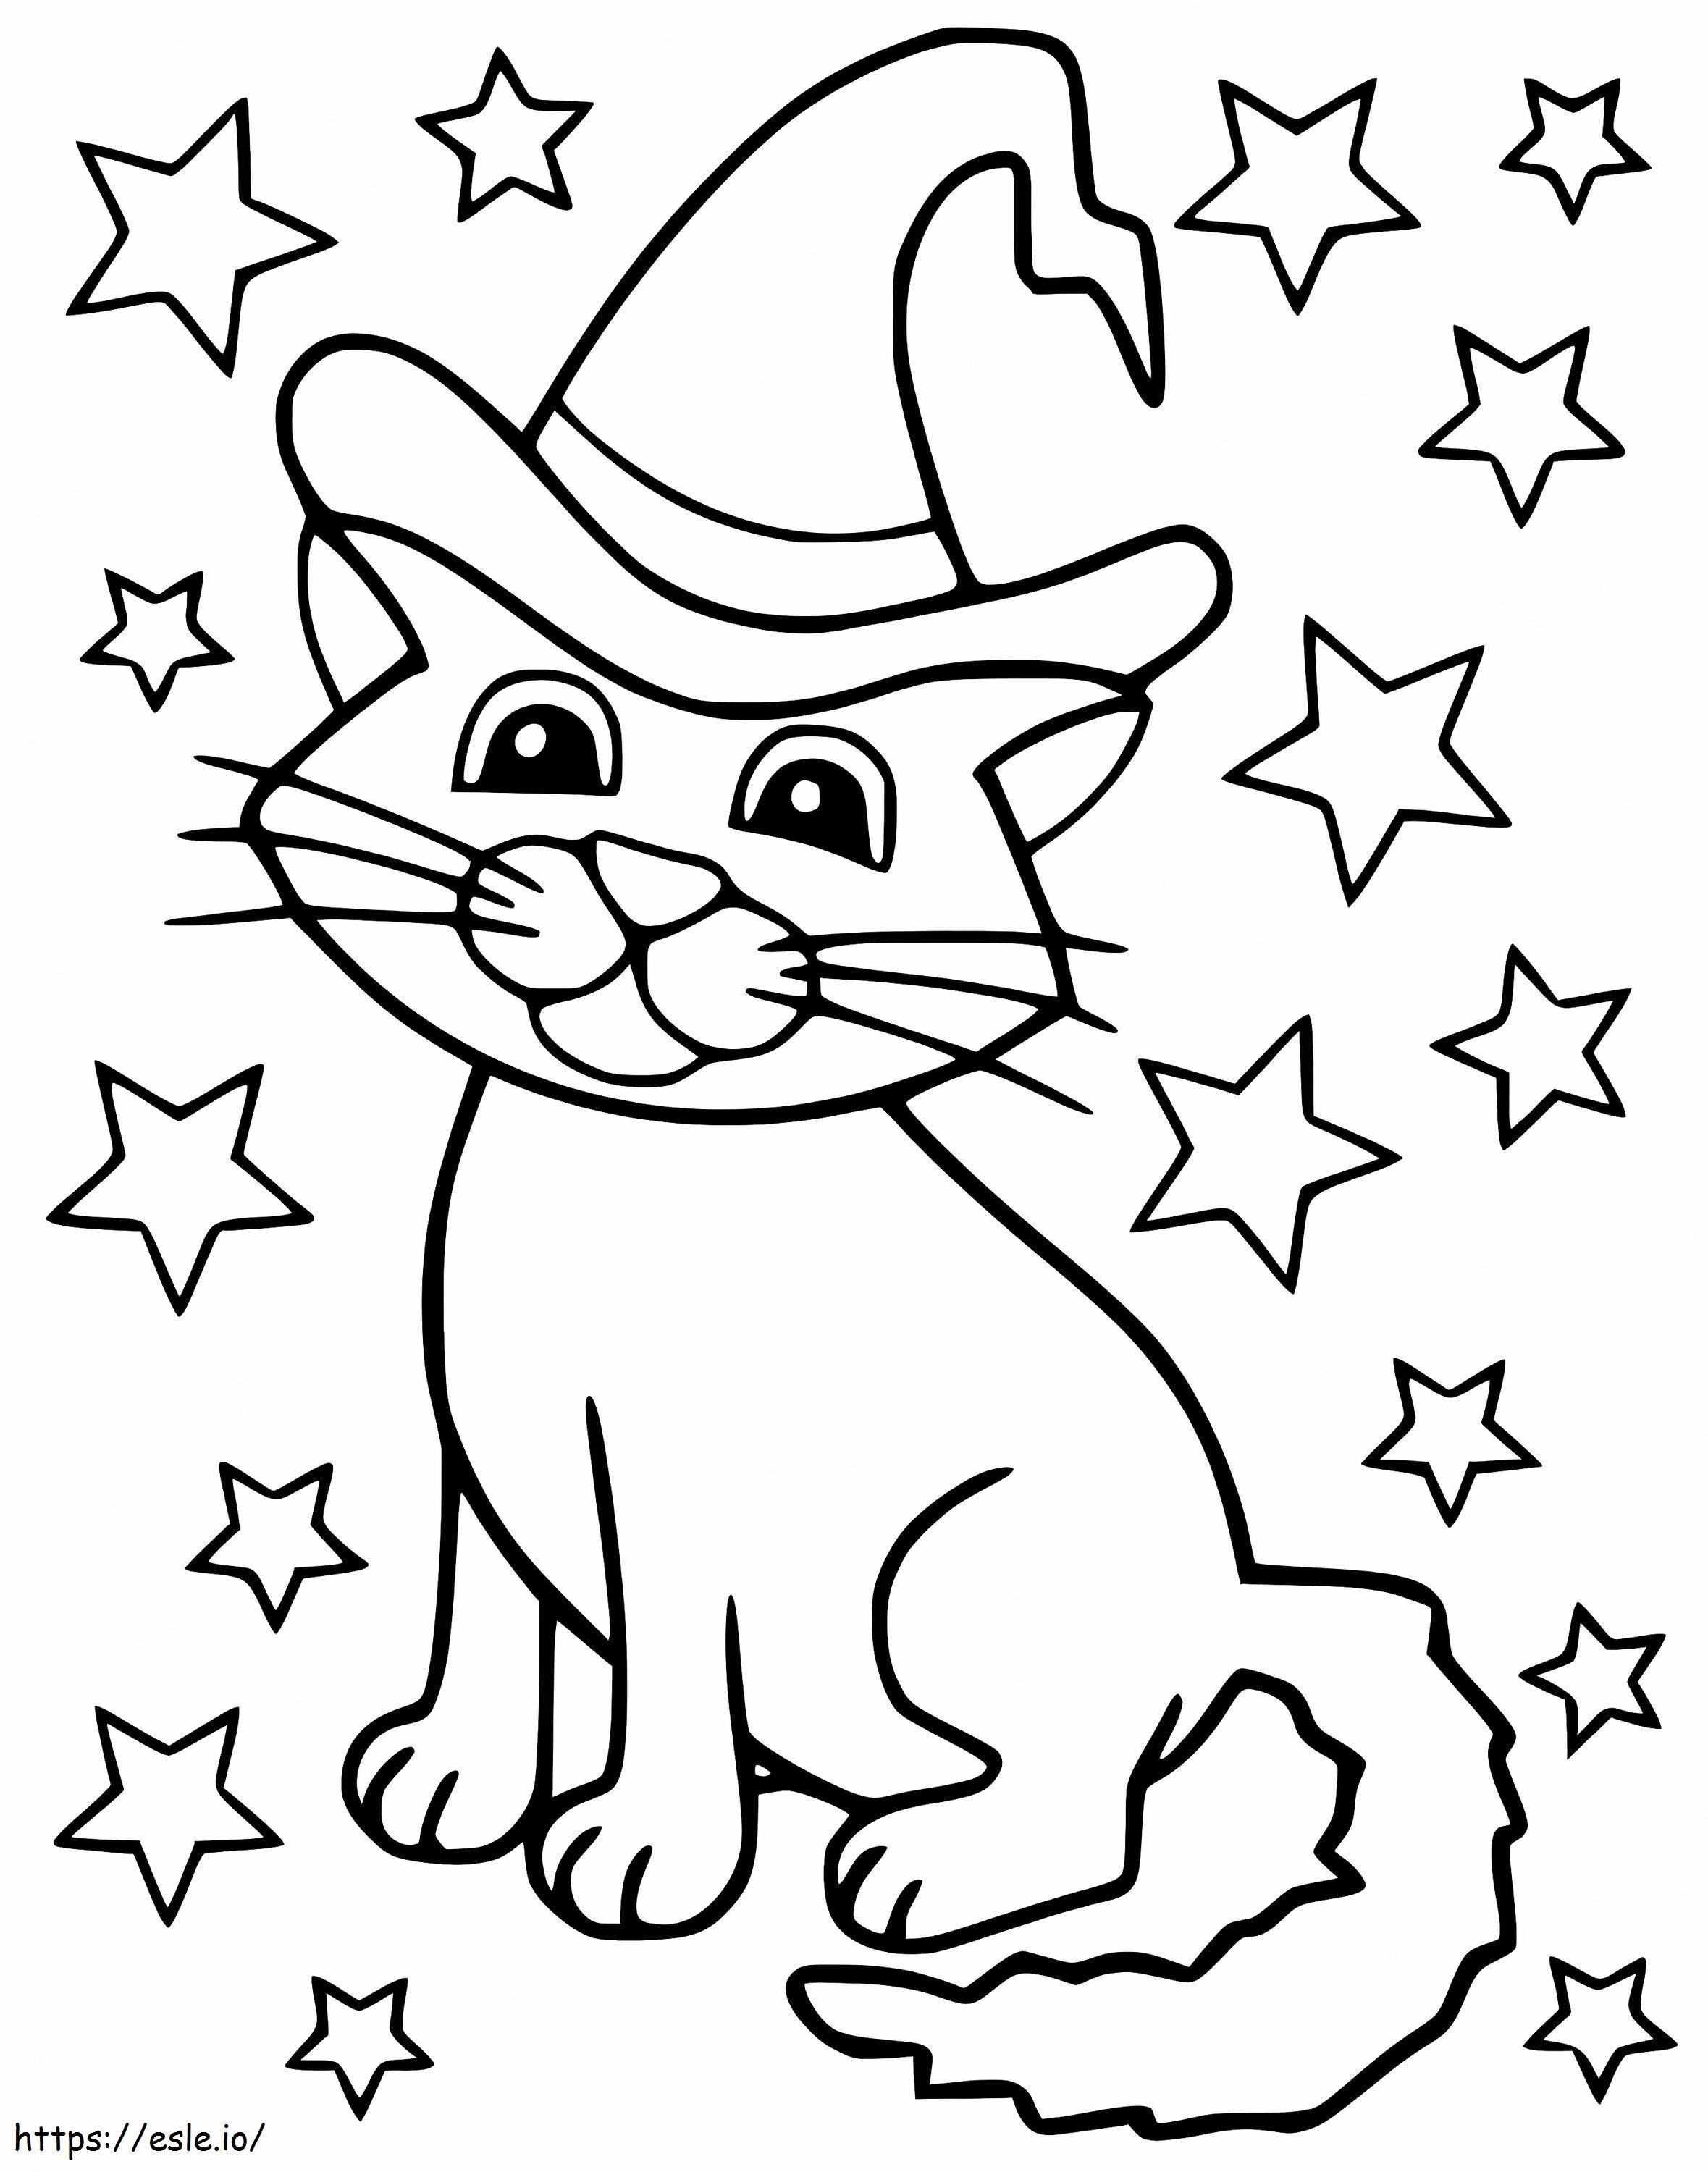 Coloriage Chat et étoiles d'Halloween à imprimer dessin